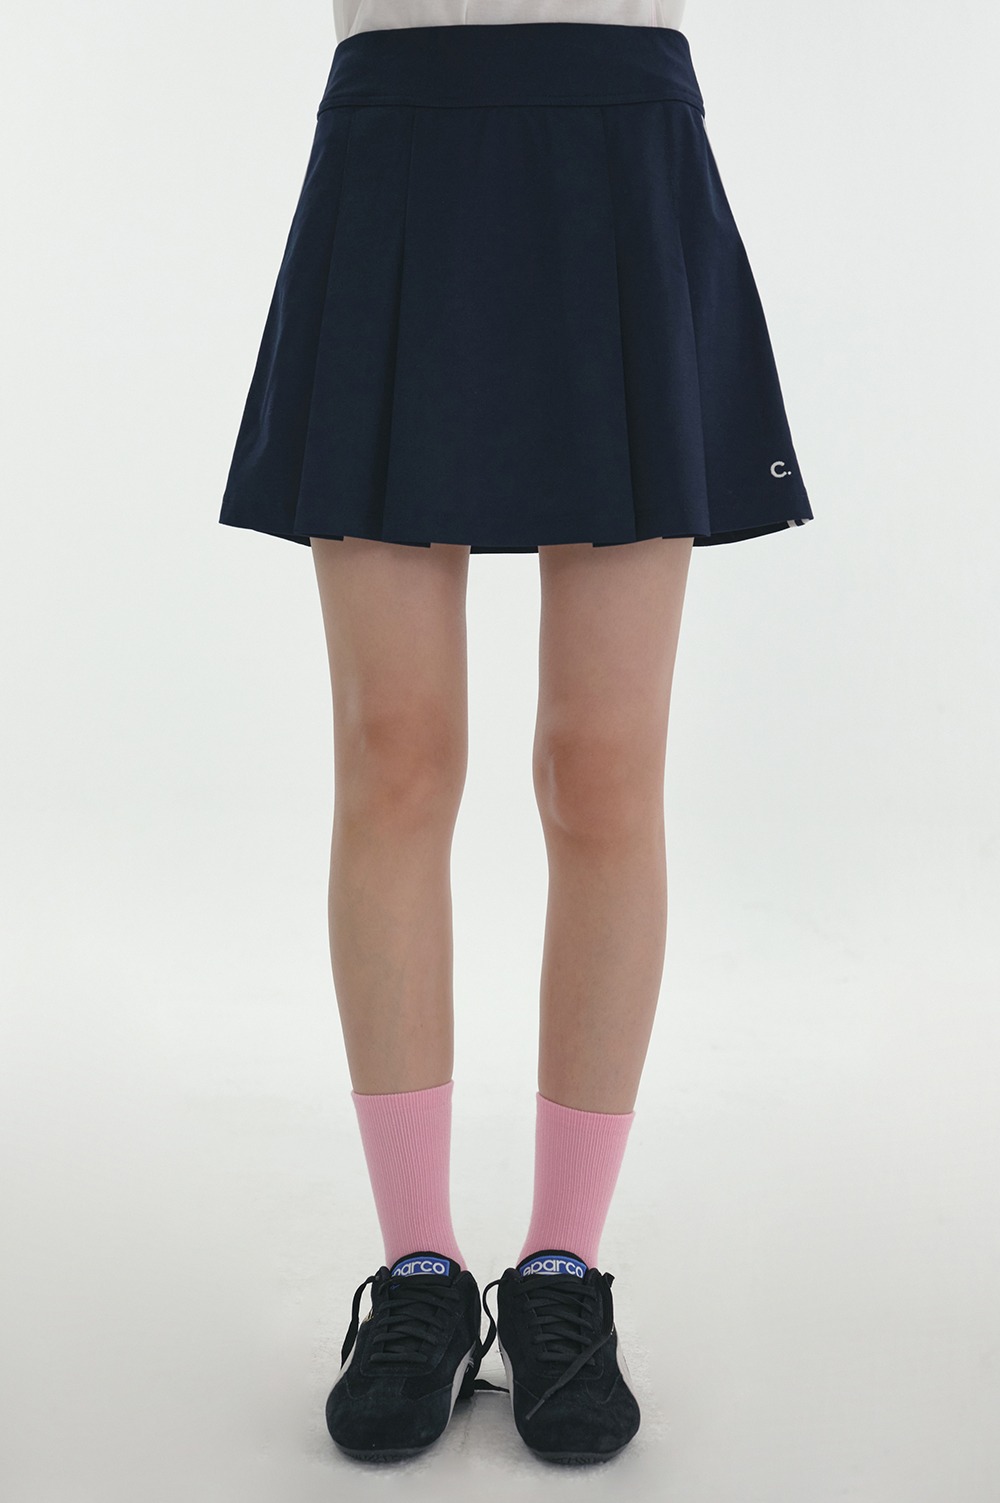 clove - [24SS clove] Court Skirt (Navy)